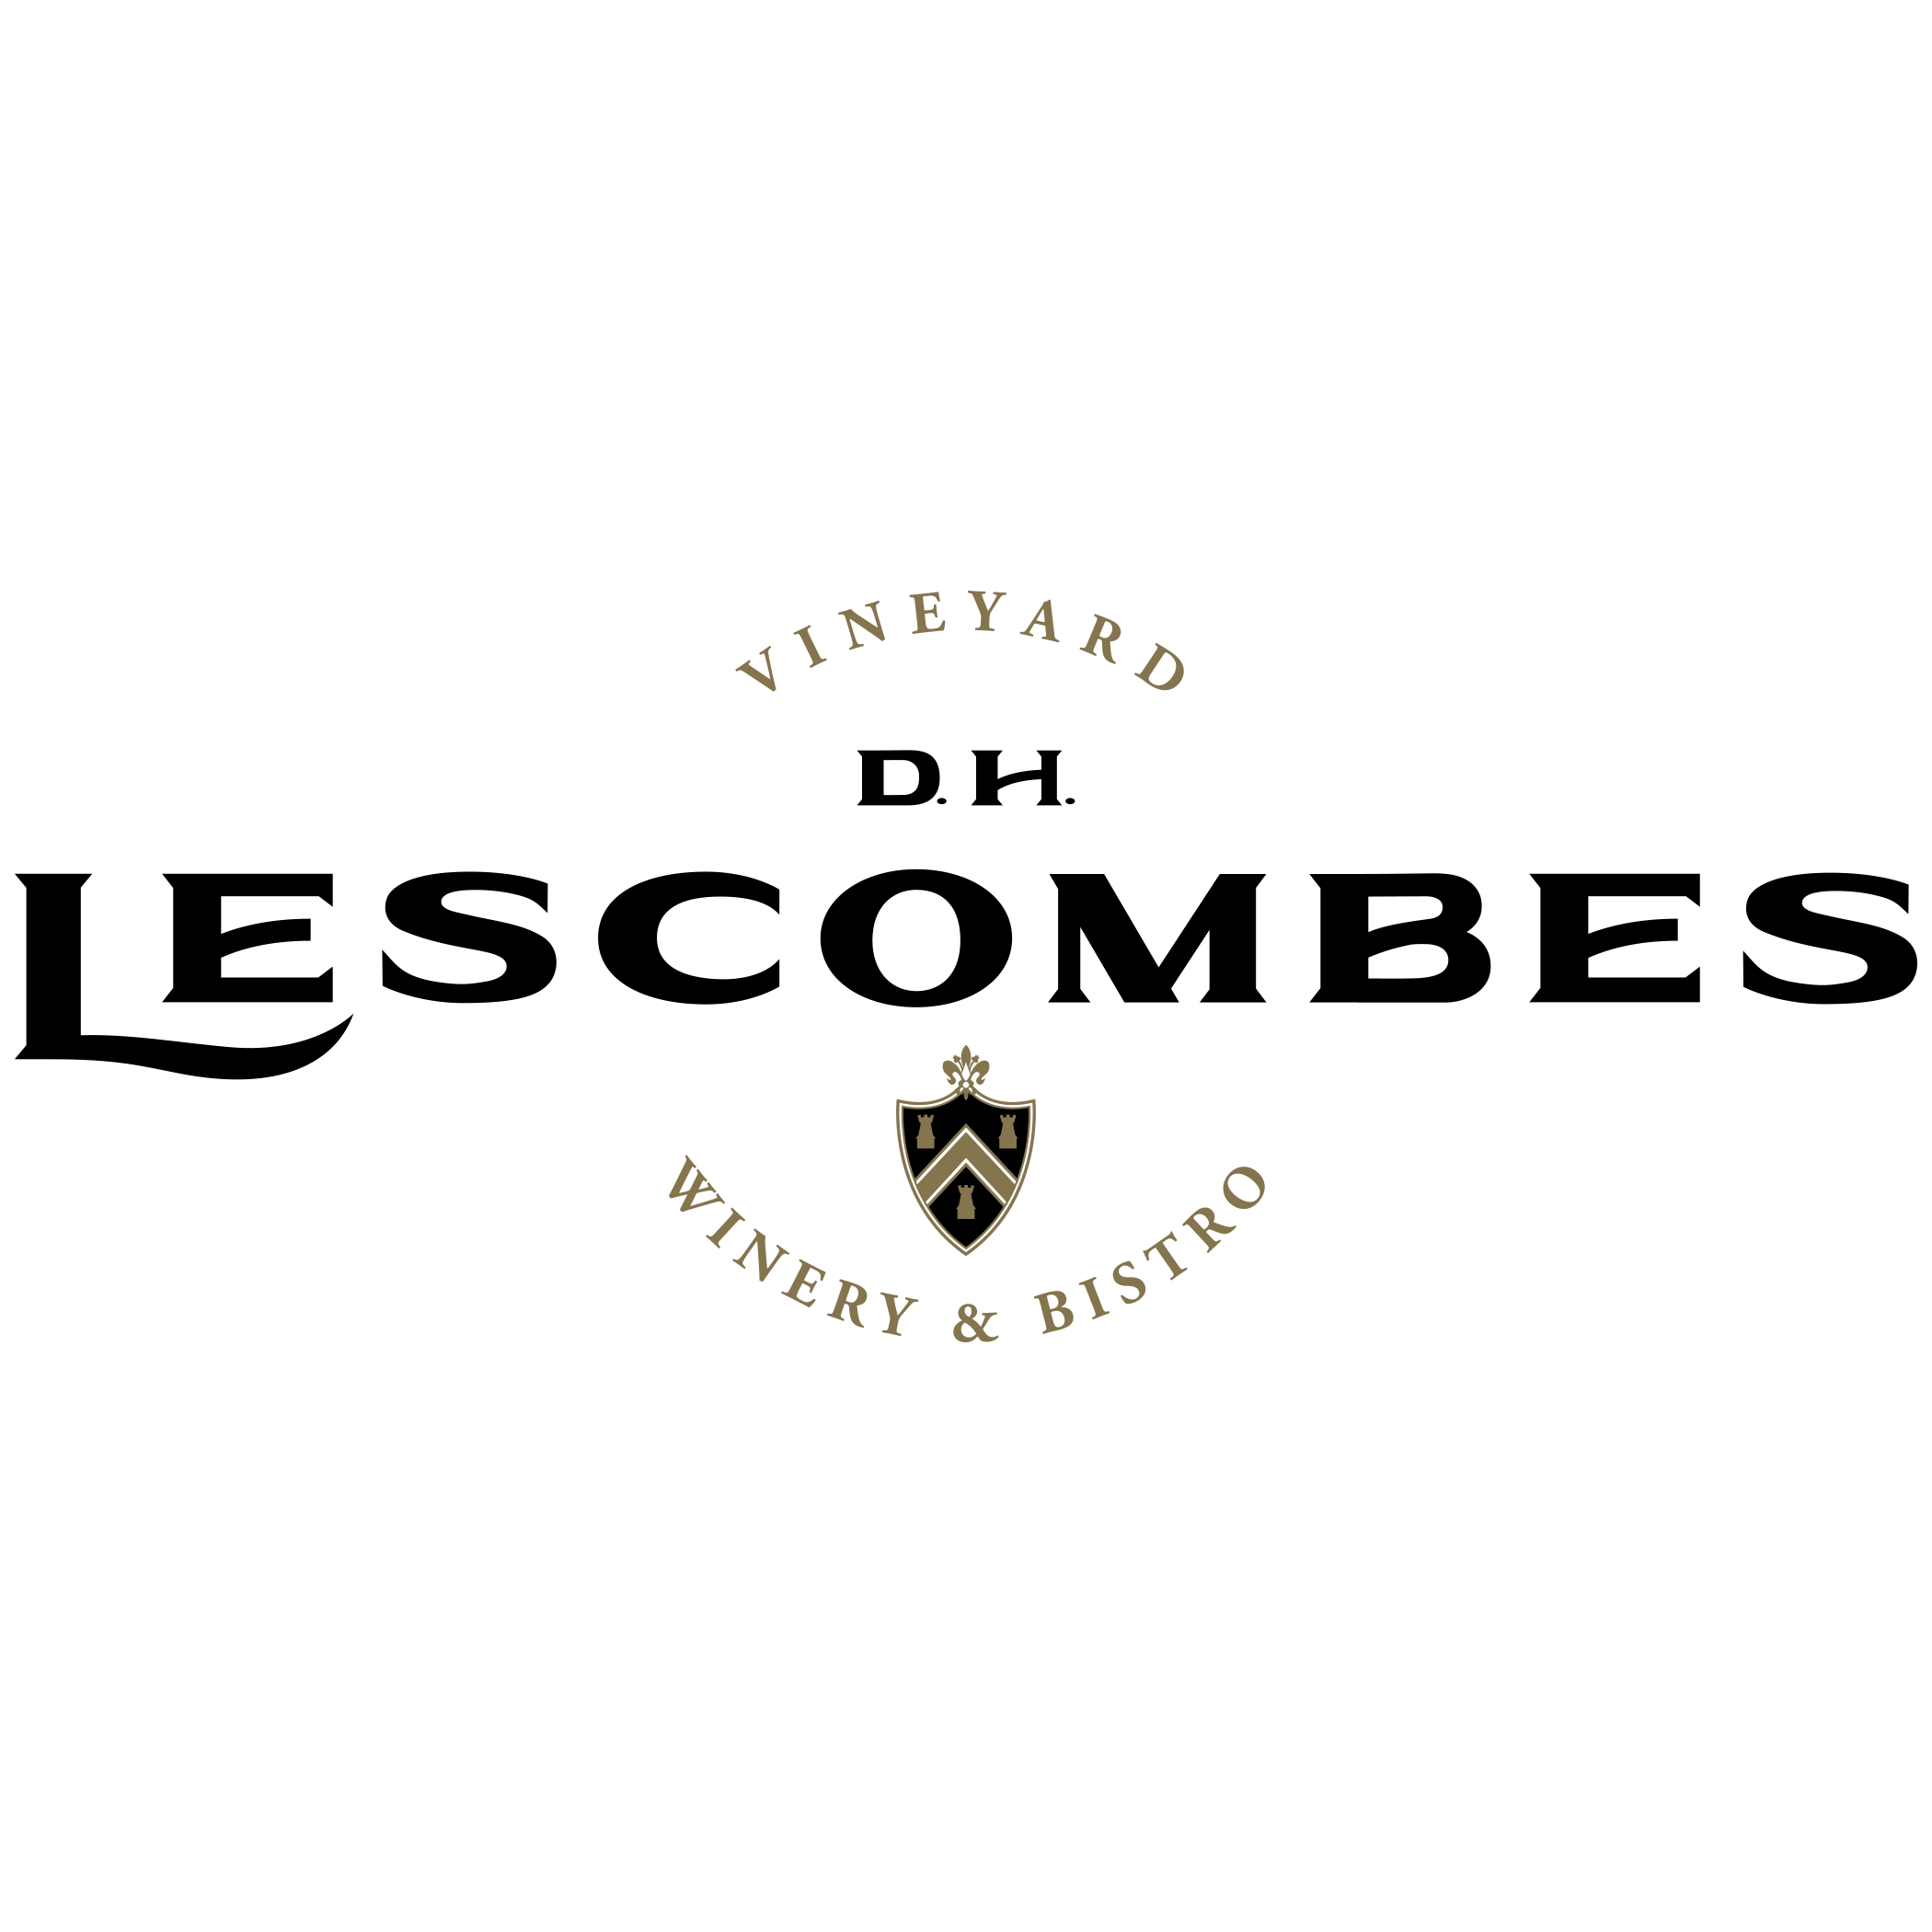 D.H. LESCOMBES WINERY & BISTRO